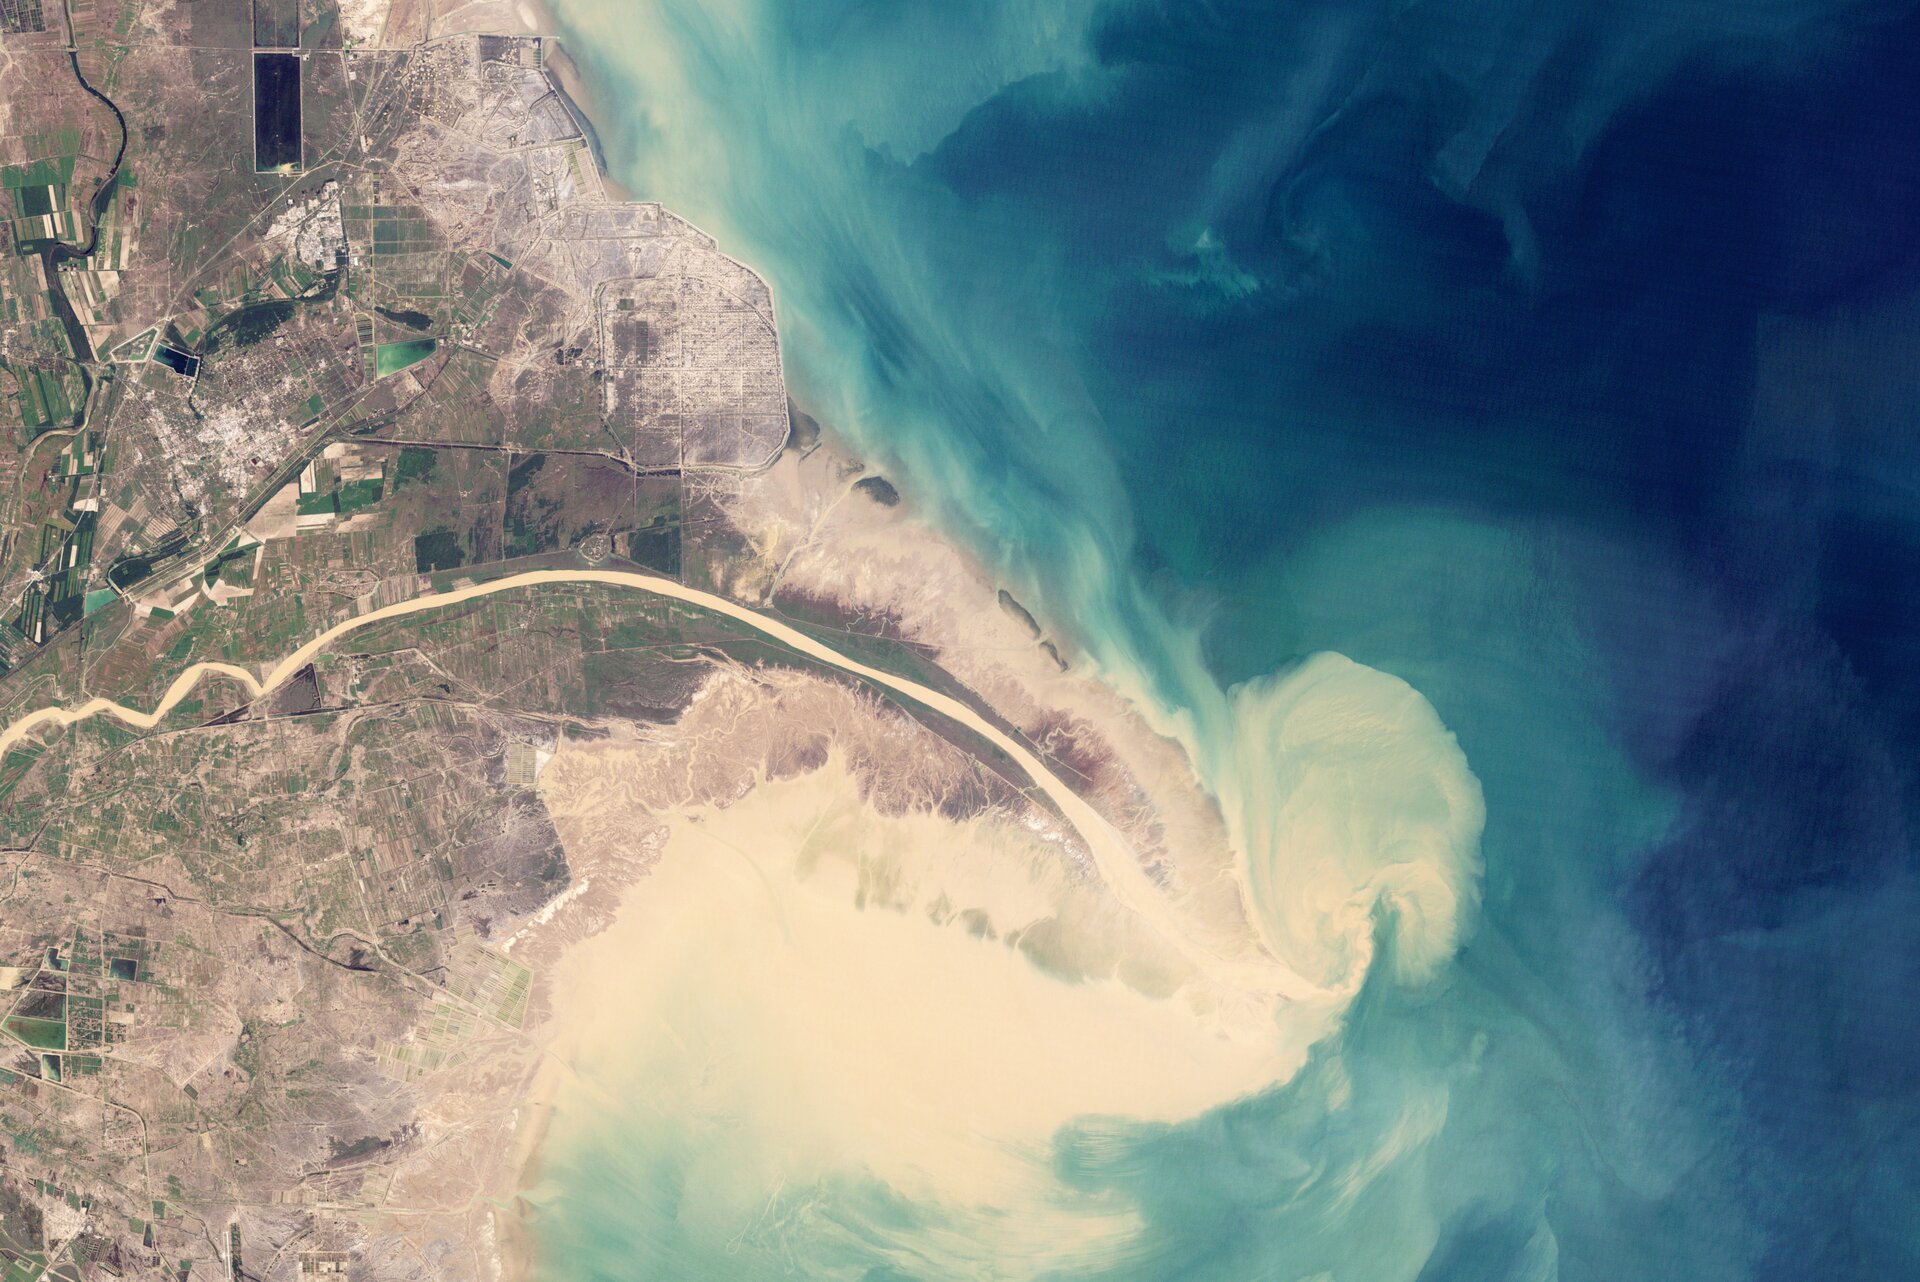 Zdjęcie satelitarne przedstawia deltę rzeki - rzeka ma kolor biały, kontrastuje on z niebieskim kolorem morza.  